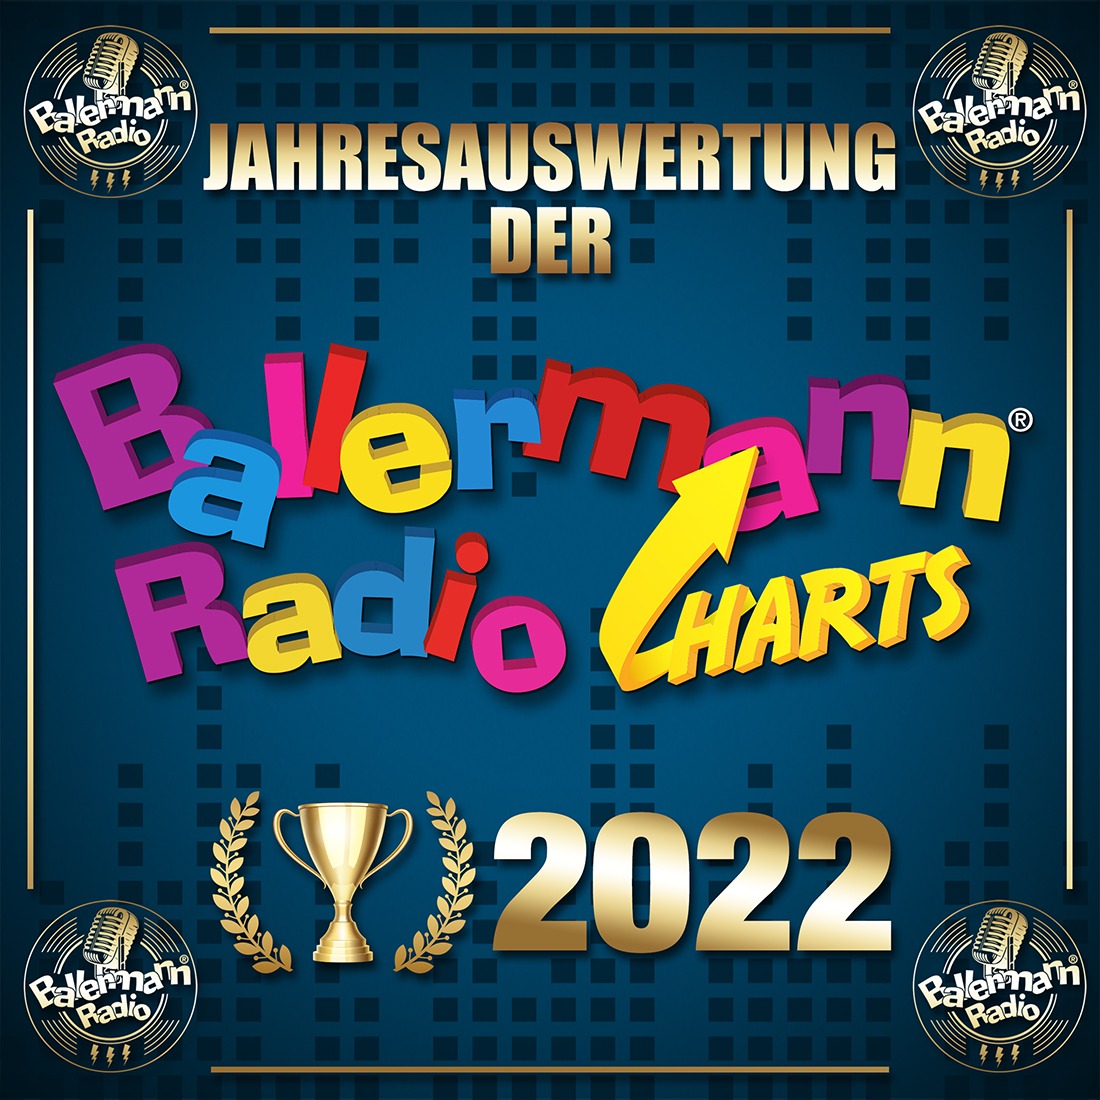 Jahresauswertung der Ballermann Radiocharts 2022: Diese Songs sind Eure TOP 20!